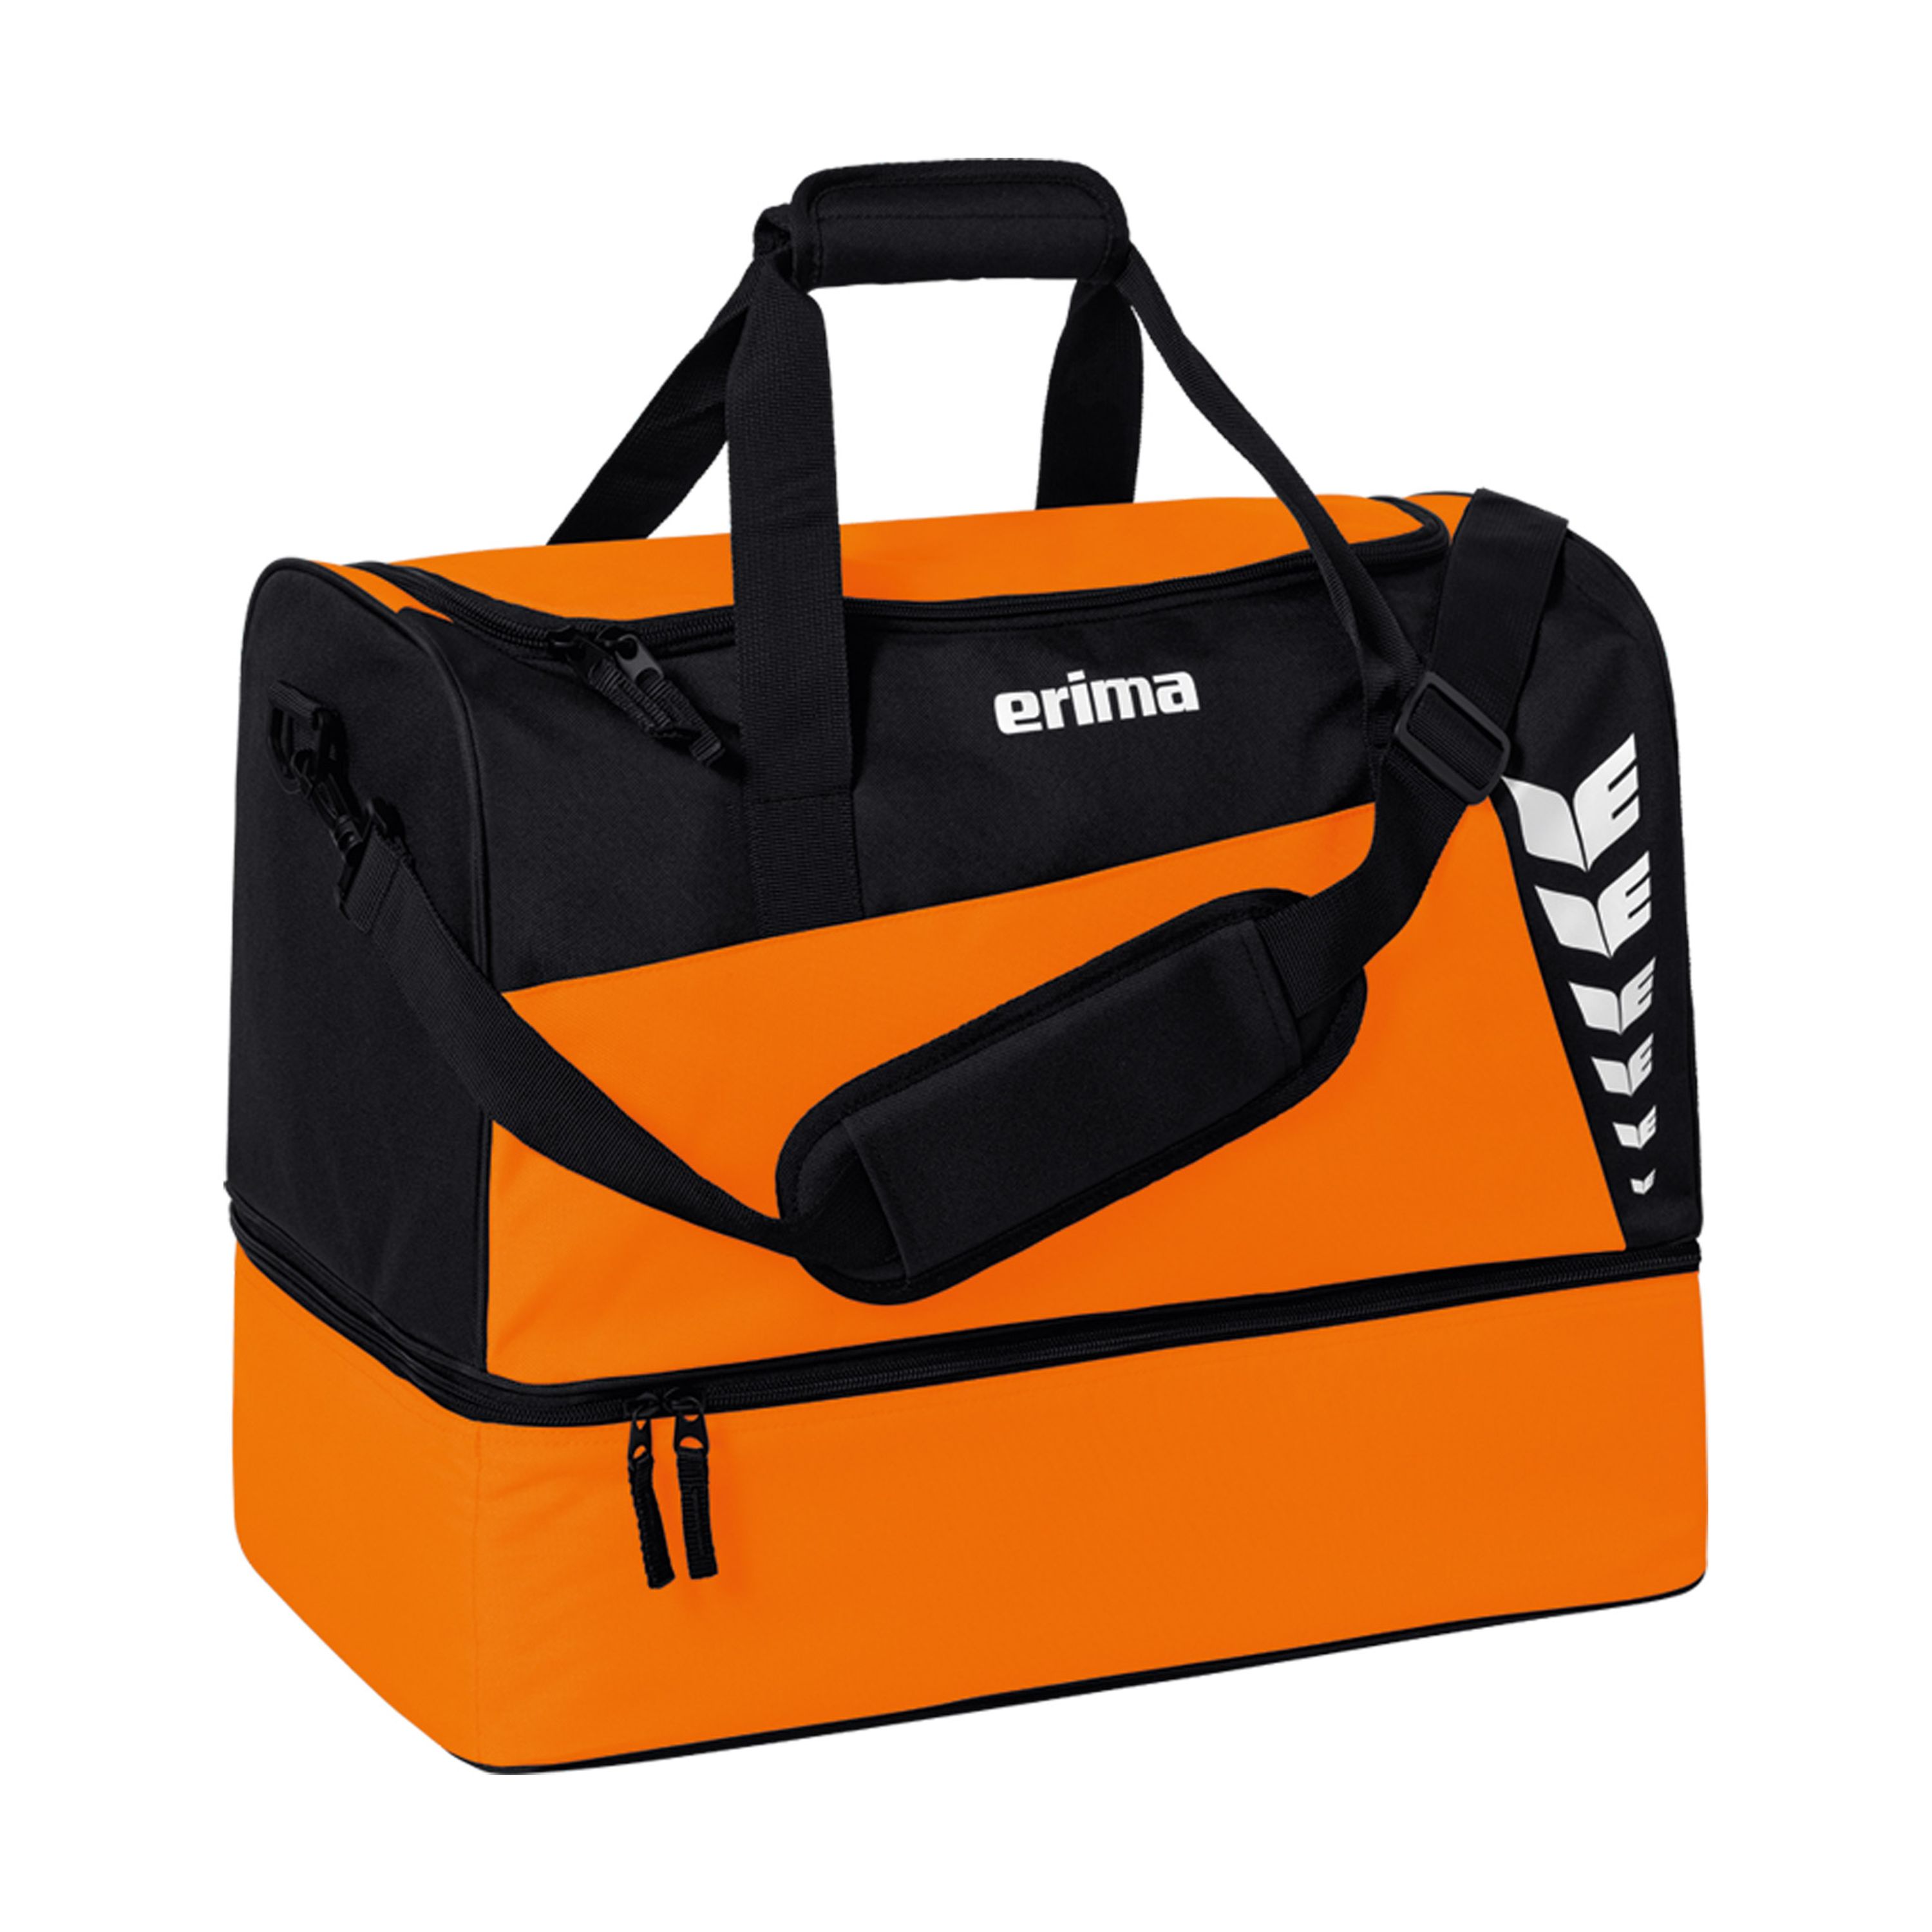 erima Six Wings Sporttasche mit Bodenfach orange/schwarz S